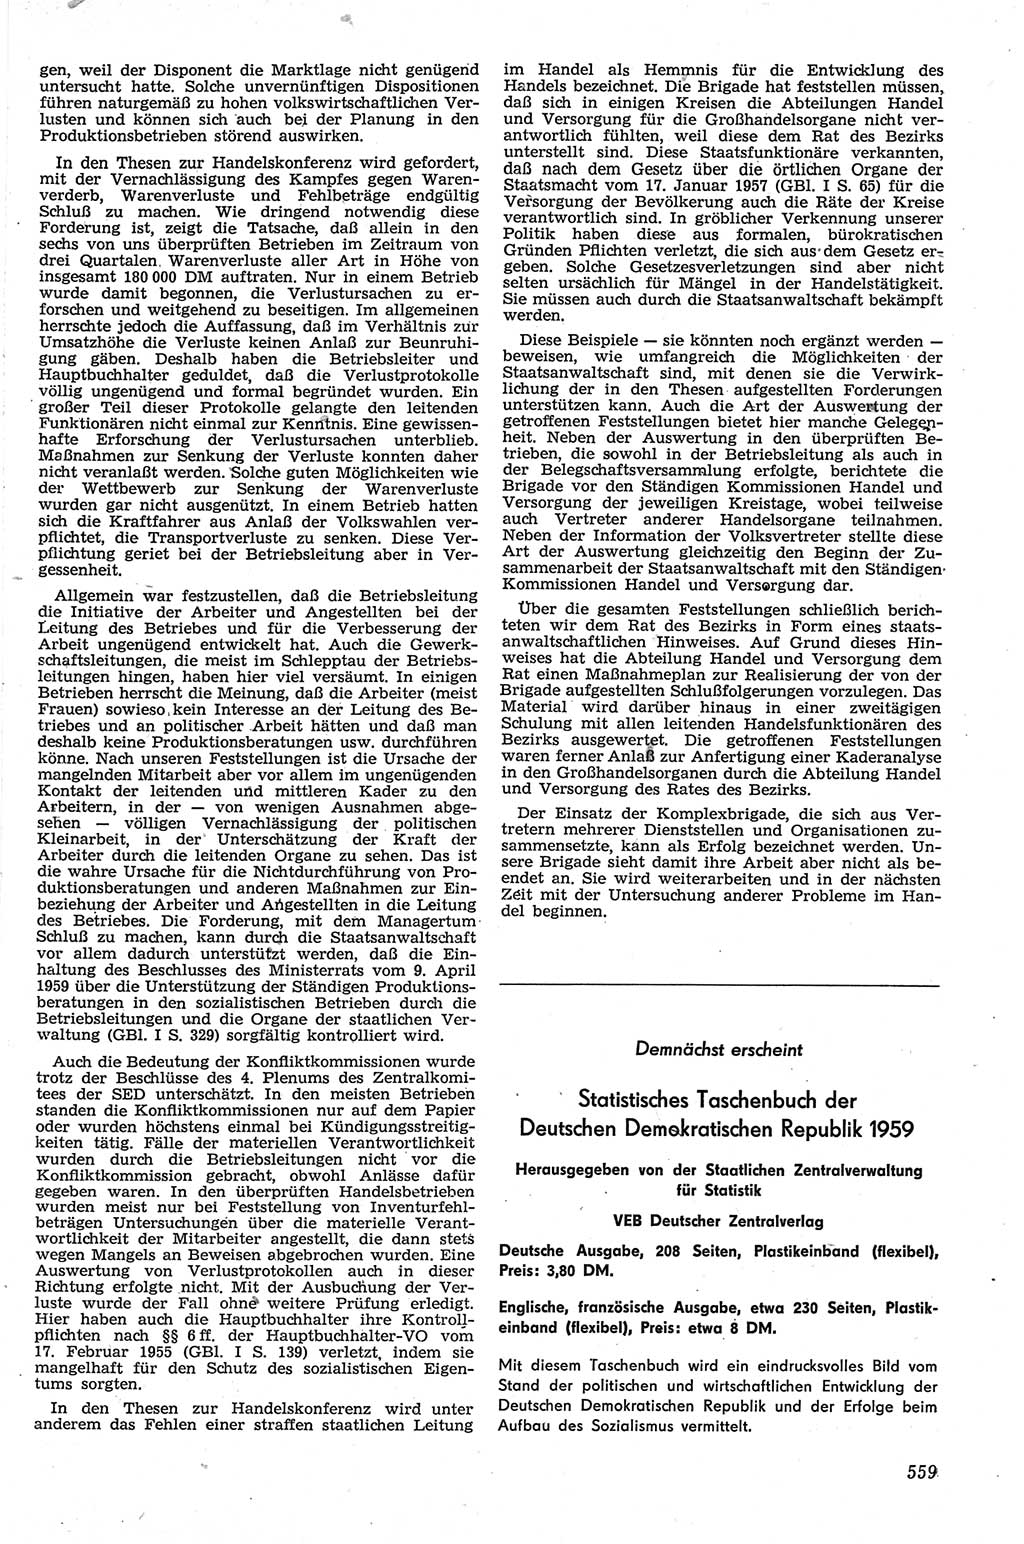 Neue Justiz (NJ), Zeitschrift für Recht und Rechtswissenschaft [Deutsche Demokratische Republik (DDR)], 13. Jahrgang 1959, Seite 559 (NJ DDR 1959, S. 559)